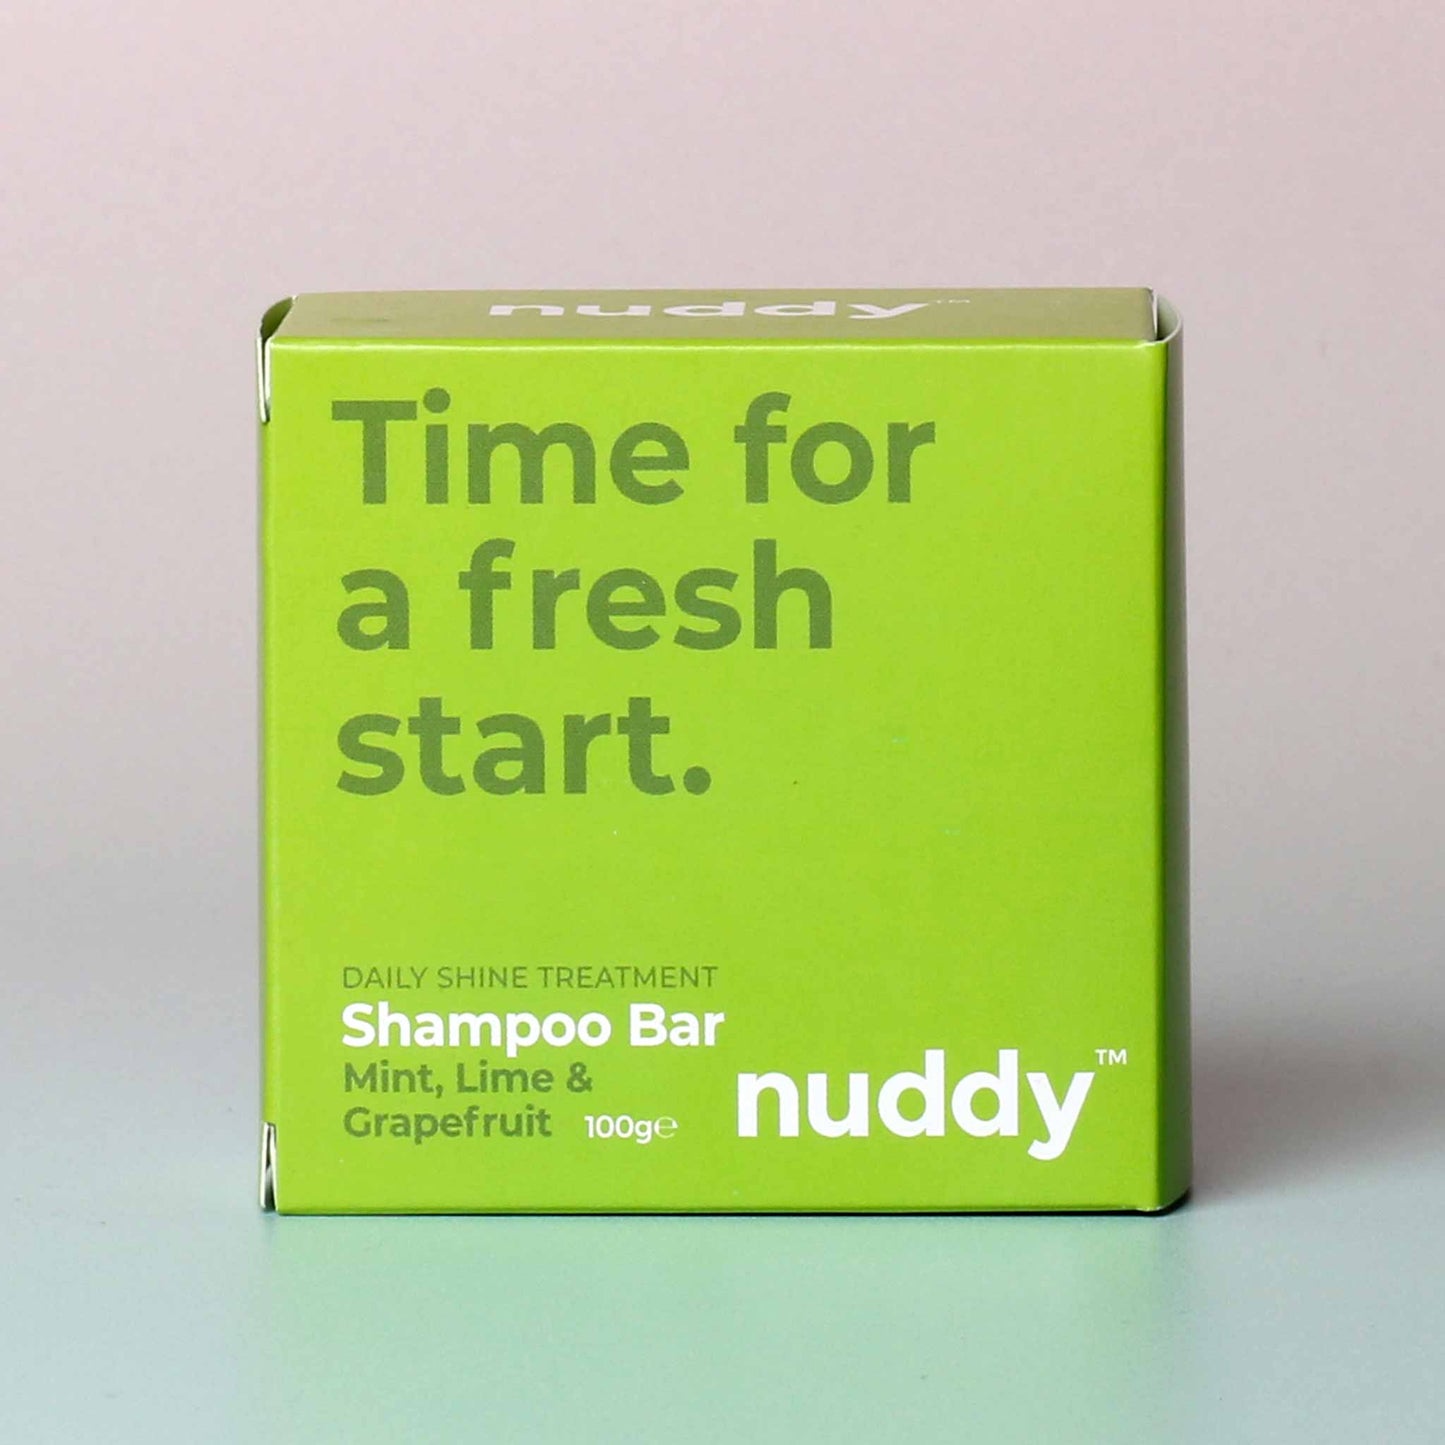 Nuddy Daily Shine Treatment Shampoo Bar - Mint, Lime & Grapefruit